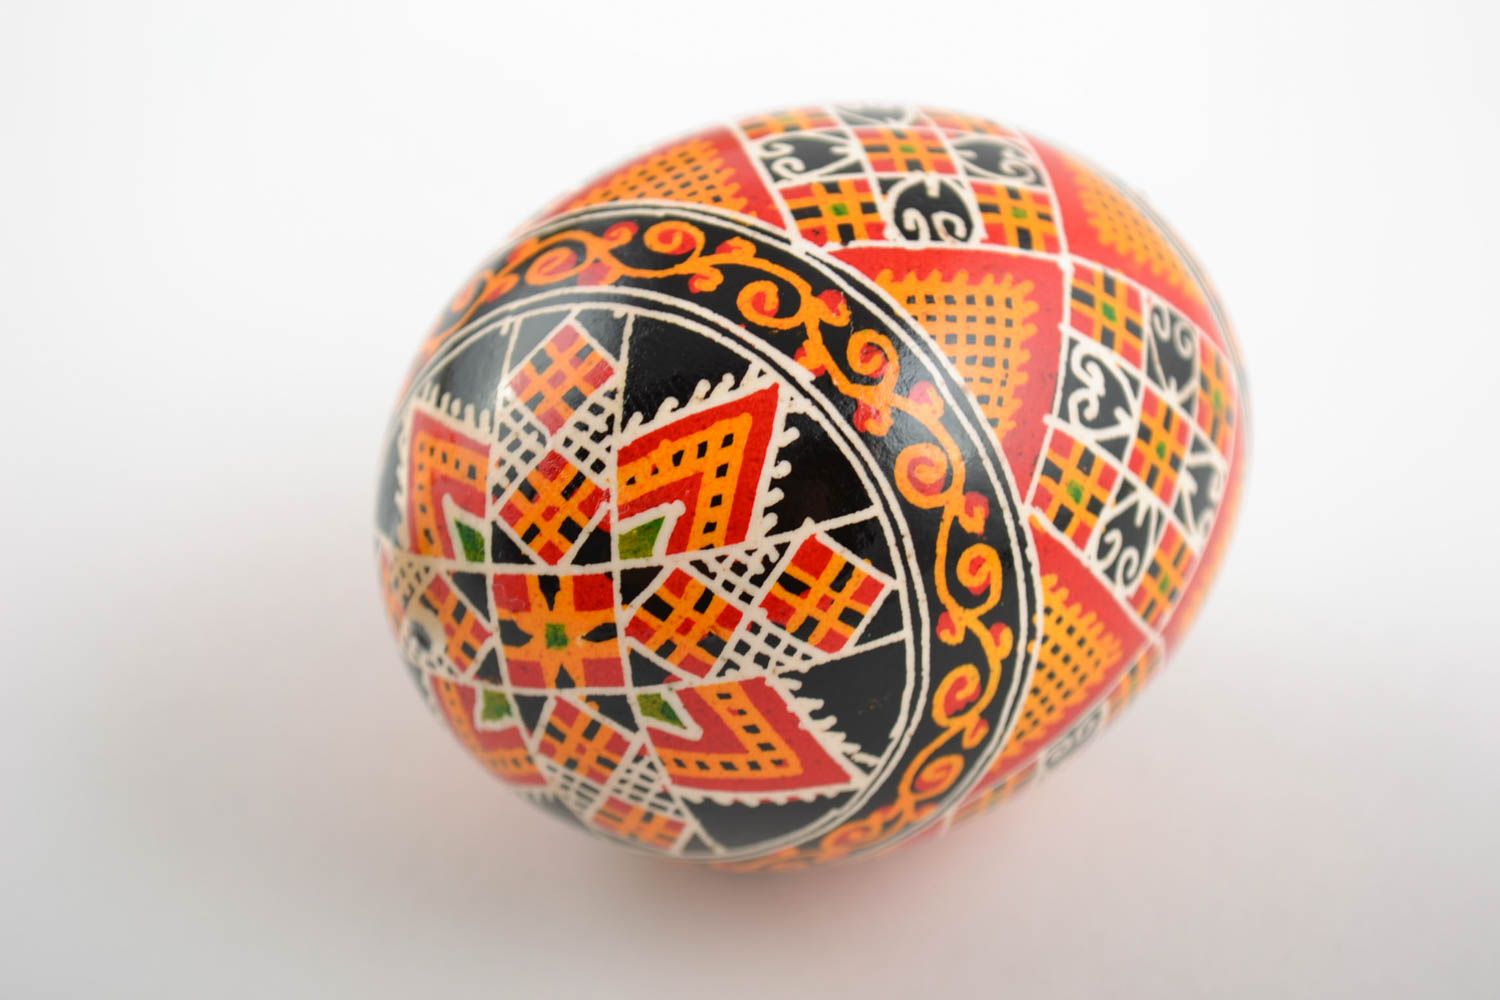 Расписное яйцо куриное со славянской символикой красивое небольшое ручная работа фото 3